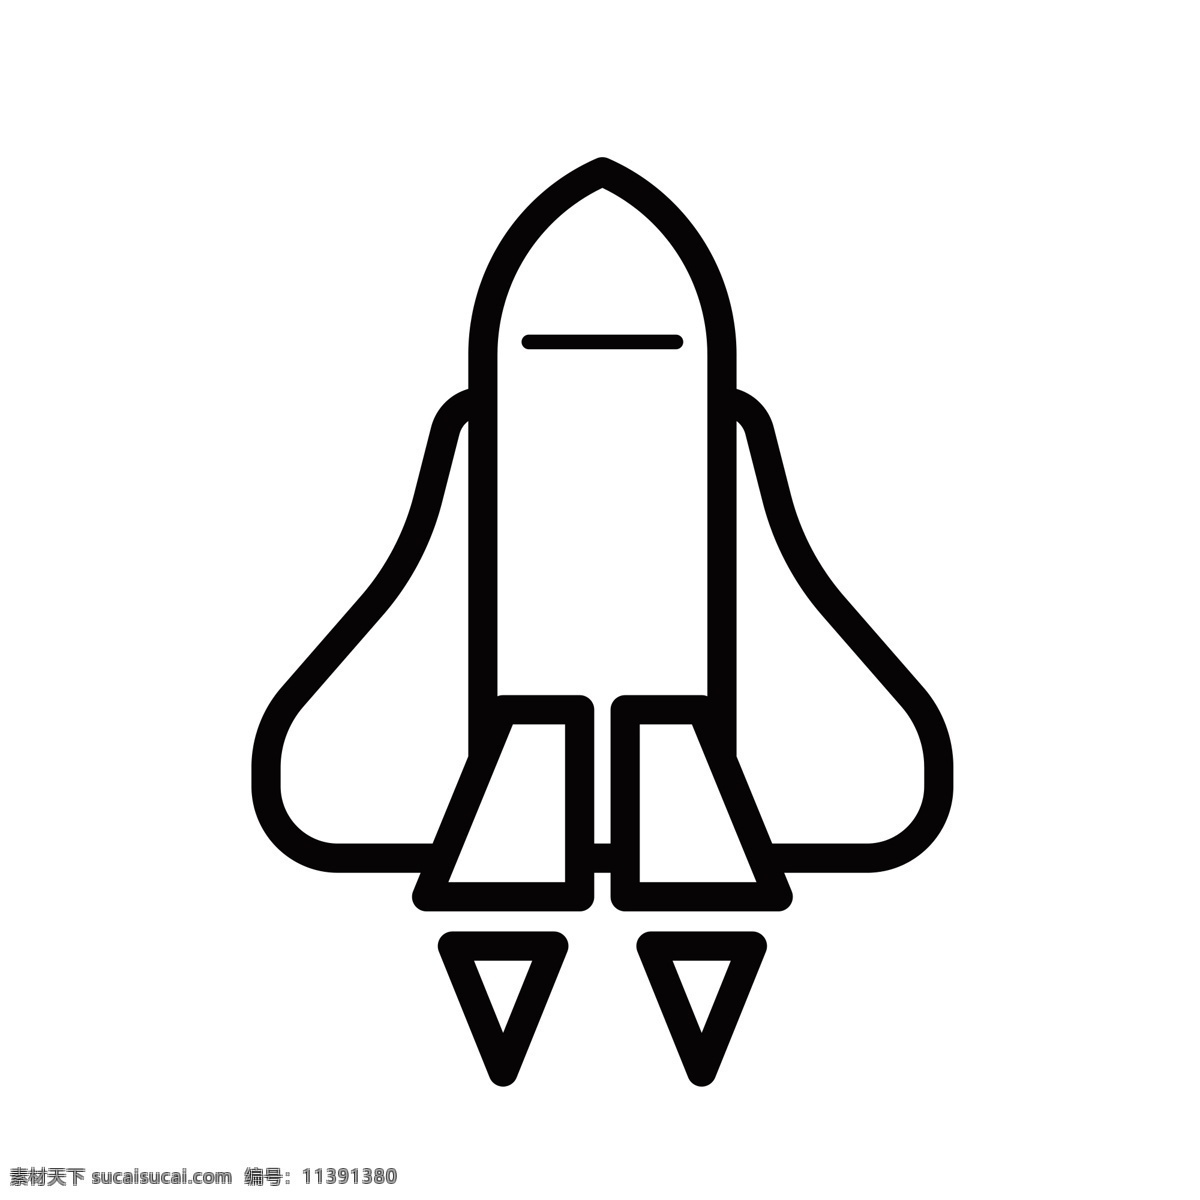 扁平化小火箭 小飞船 小火箭 扁平化ui ui图标 手机图标 界面ui 网页ui h5图标